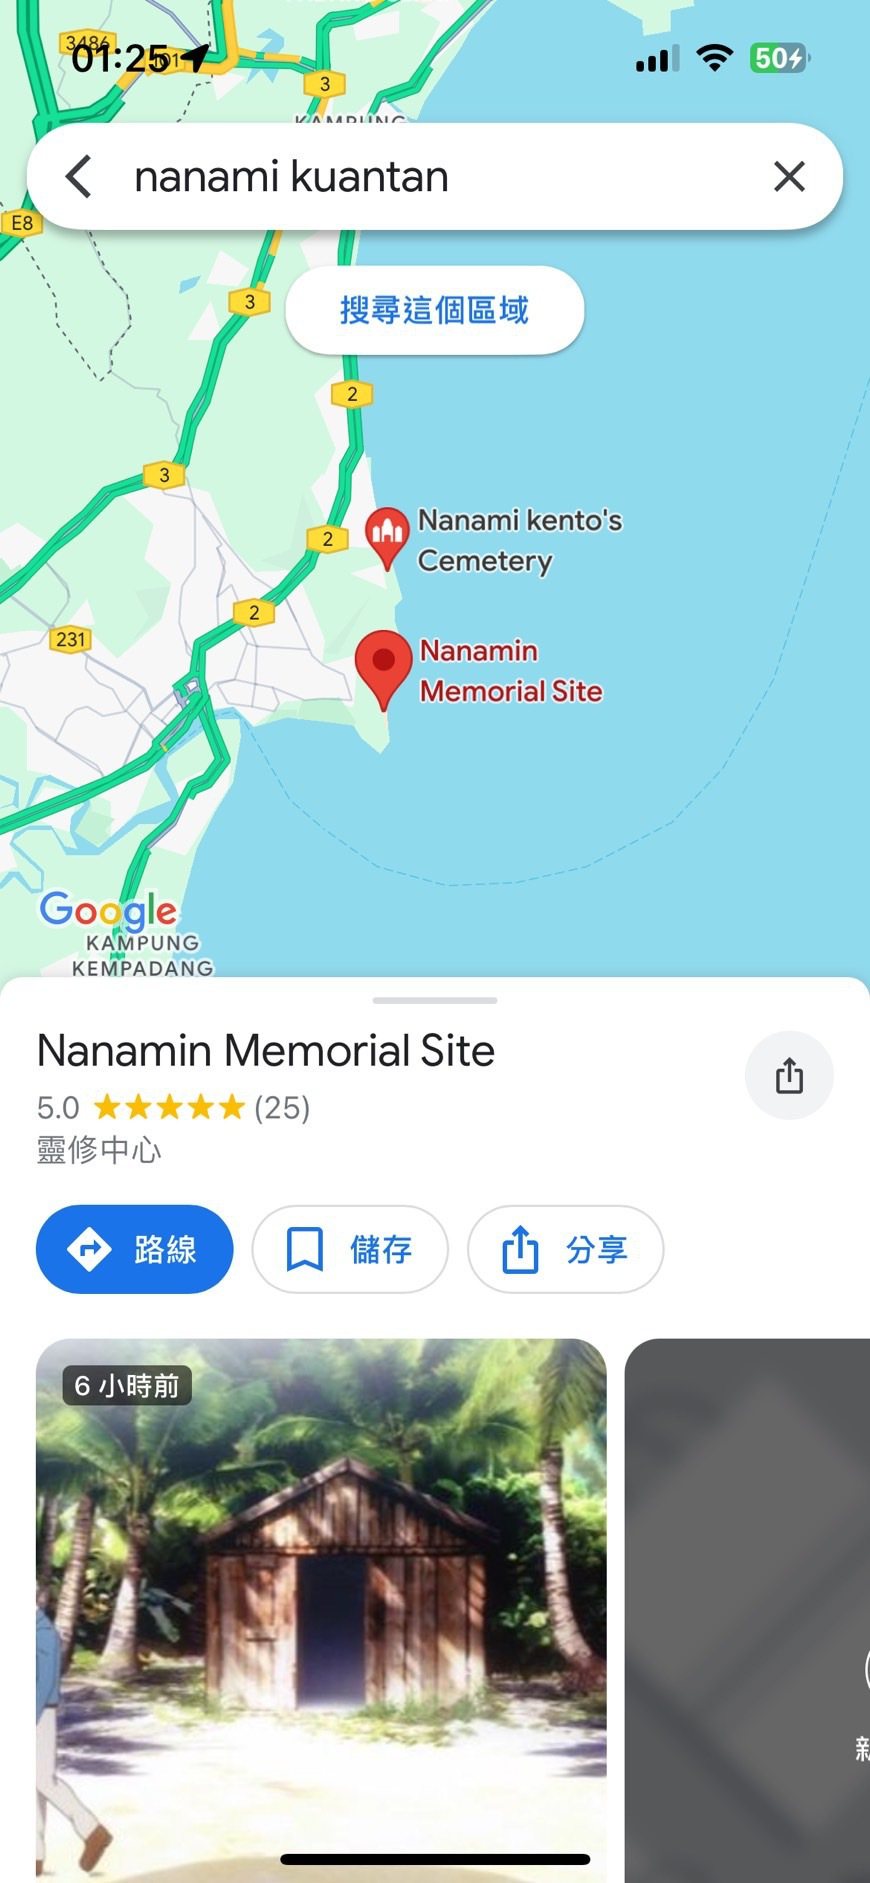 《咒术回战》粉丝在谷歌地图中的马来西亚为七海建人建神社